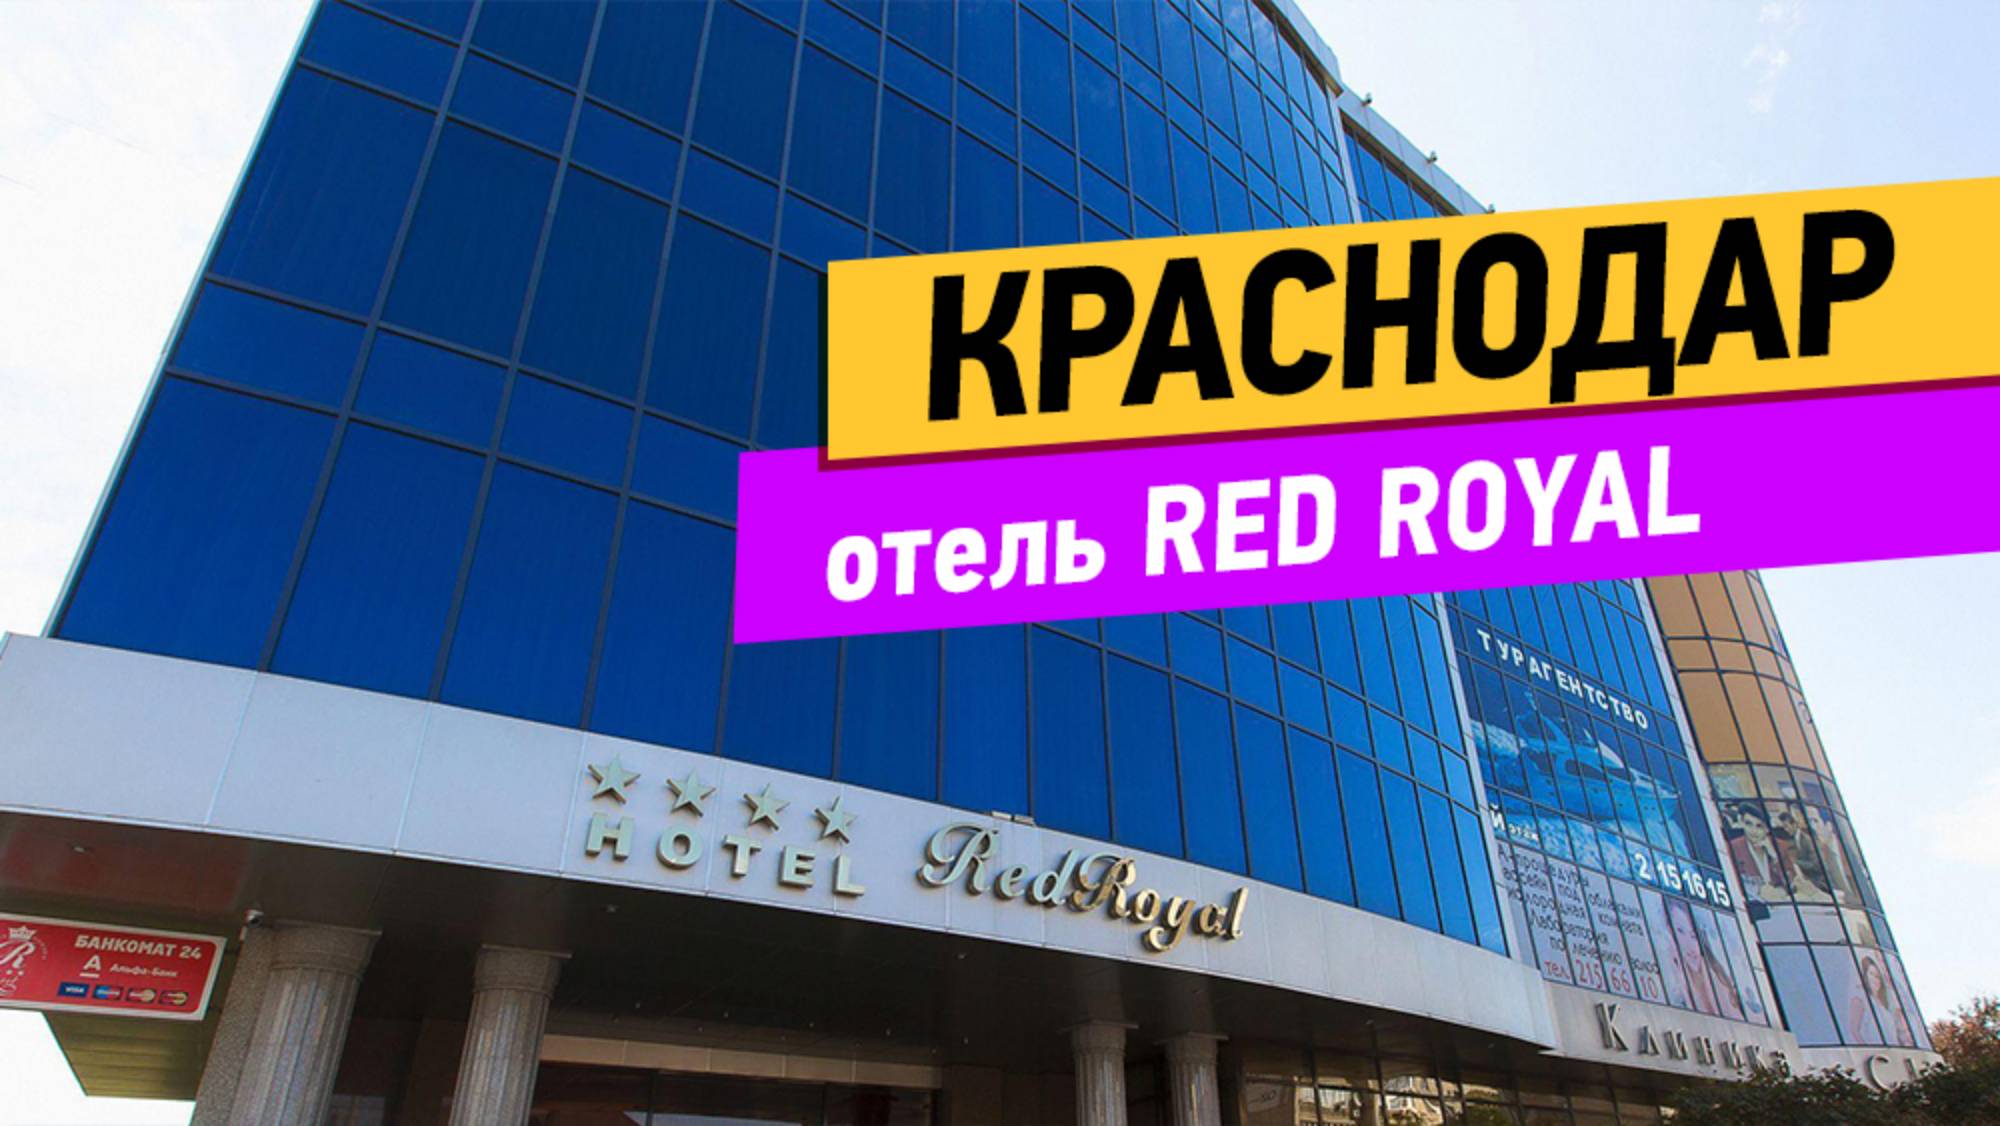 Краснодар. Red Royal обзор отеля